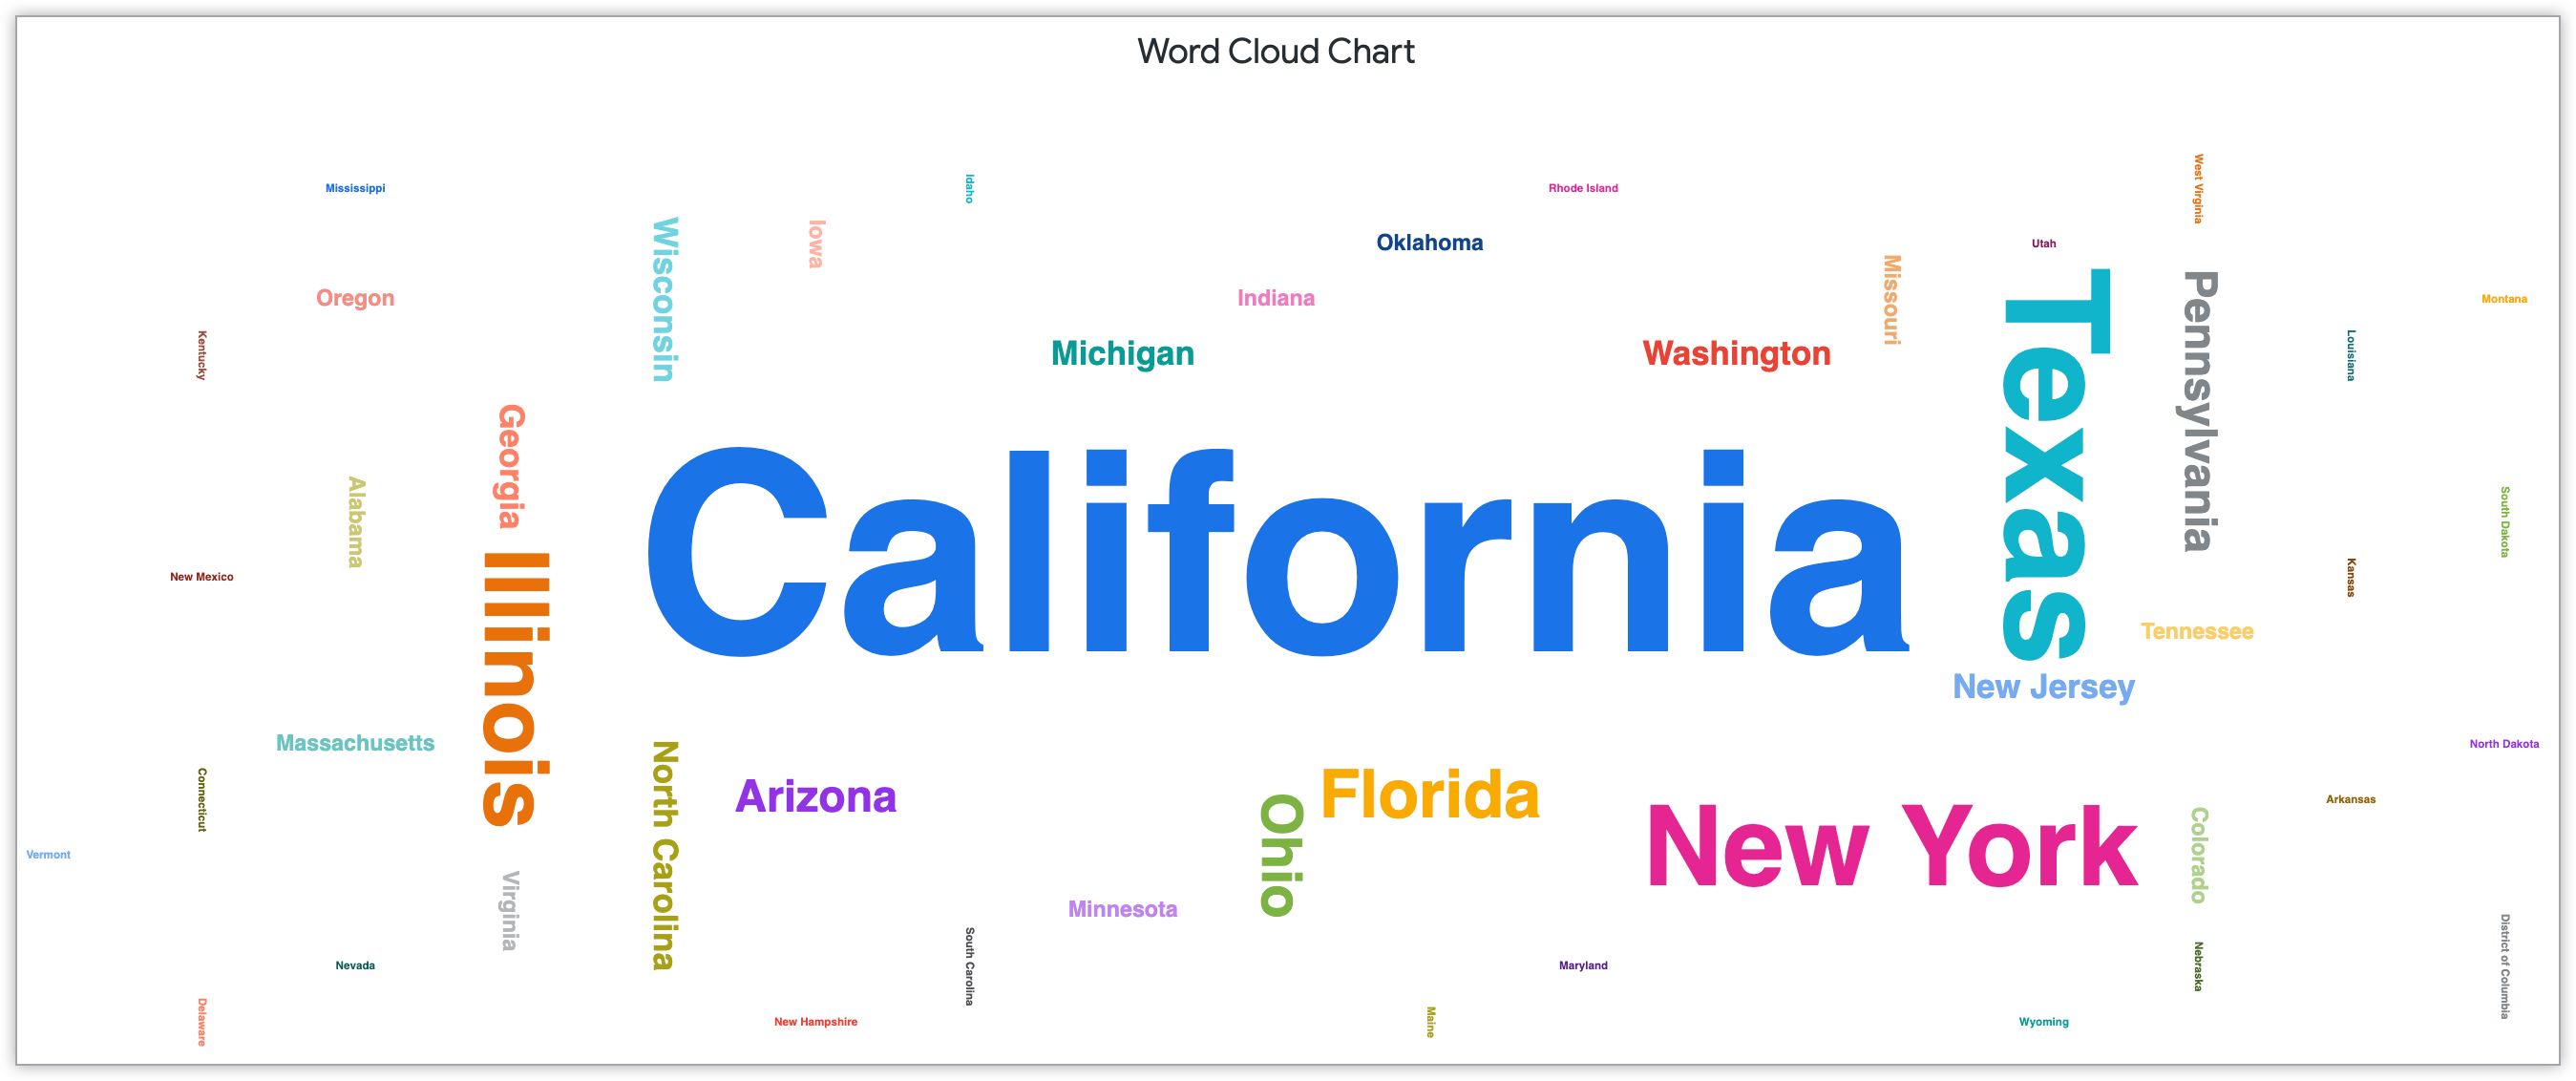 Graphique en nuage de mots affichant les noms des États en fonction du nombre de clients de cet État.